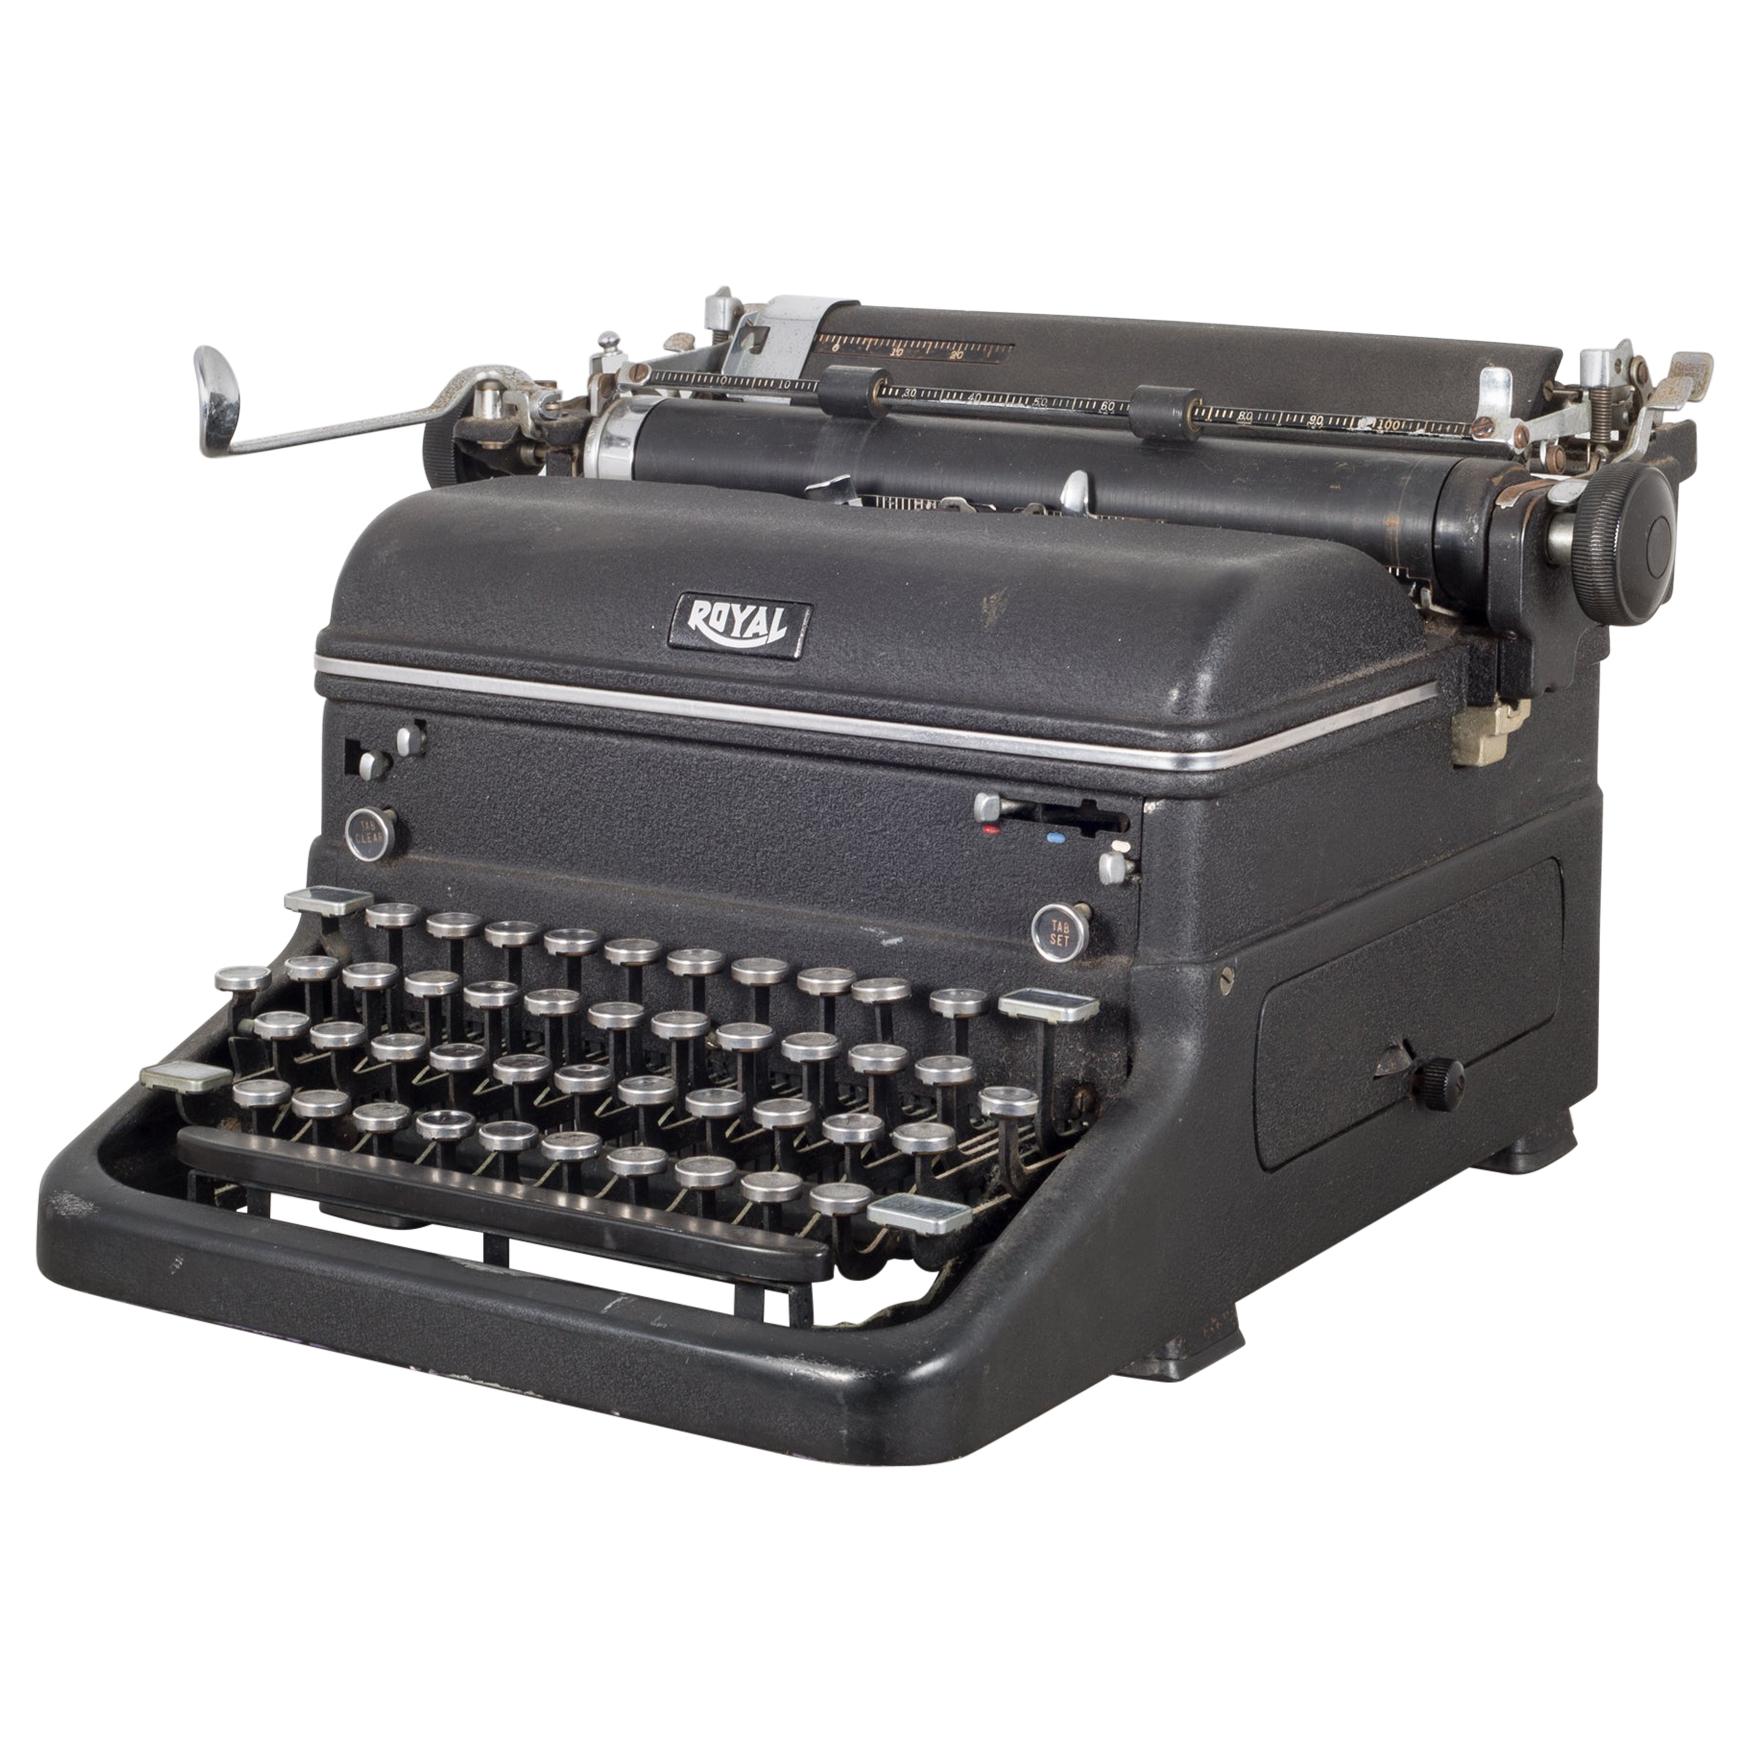 Antique Royal "Magic Margin" Typewriter, circa 1938